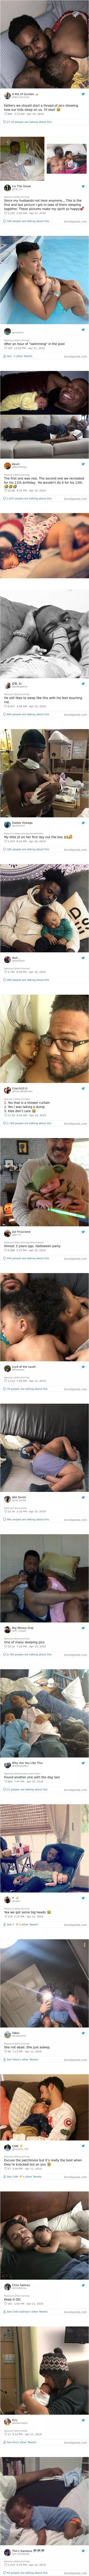 Tata je pokazao kako je dijete zaspalo na njemu, fotografija je pokrenula sladak trend na internetu